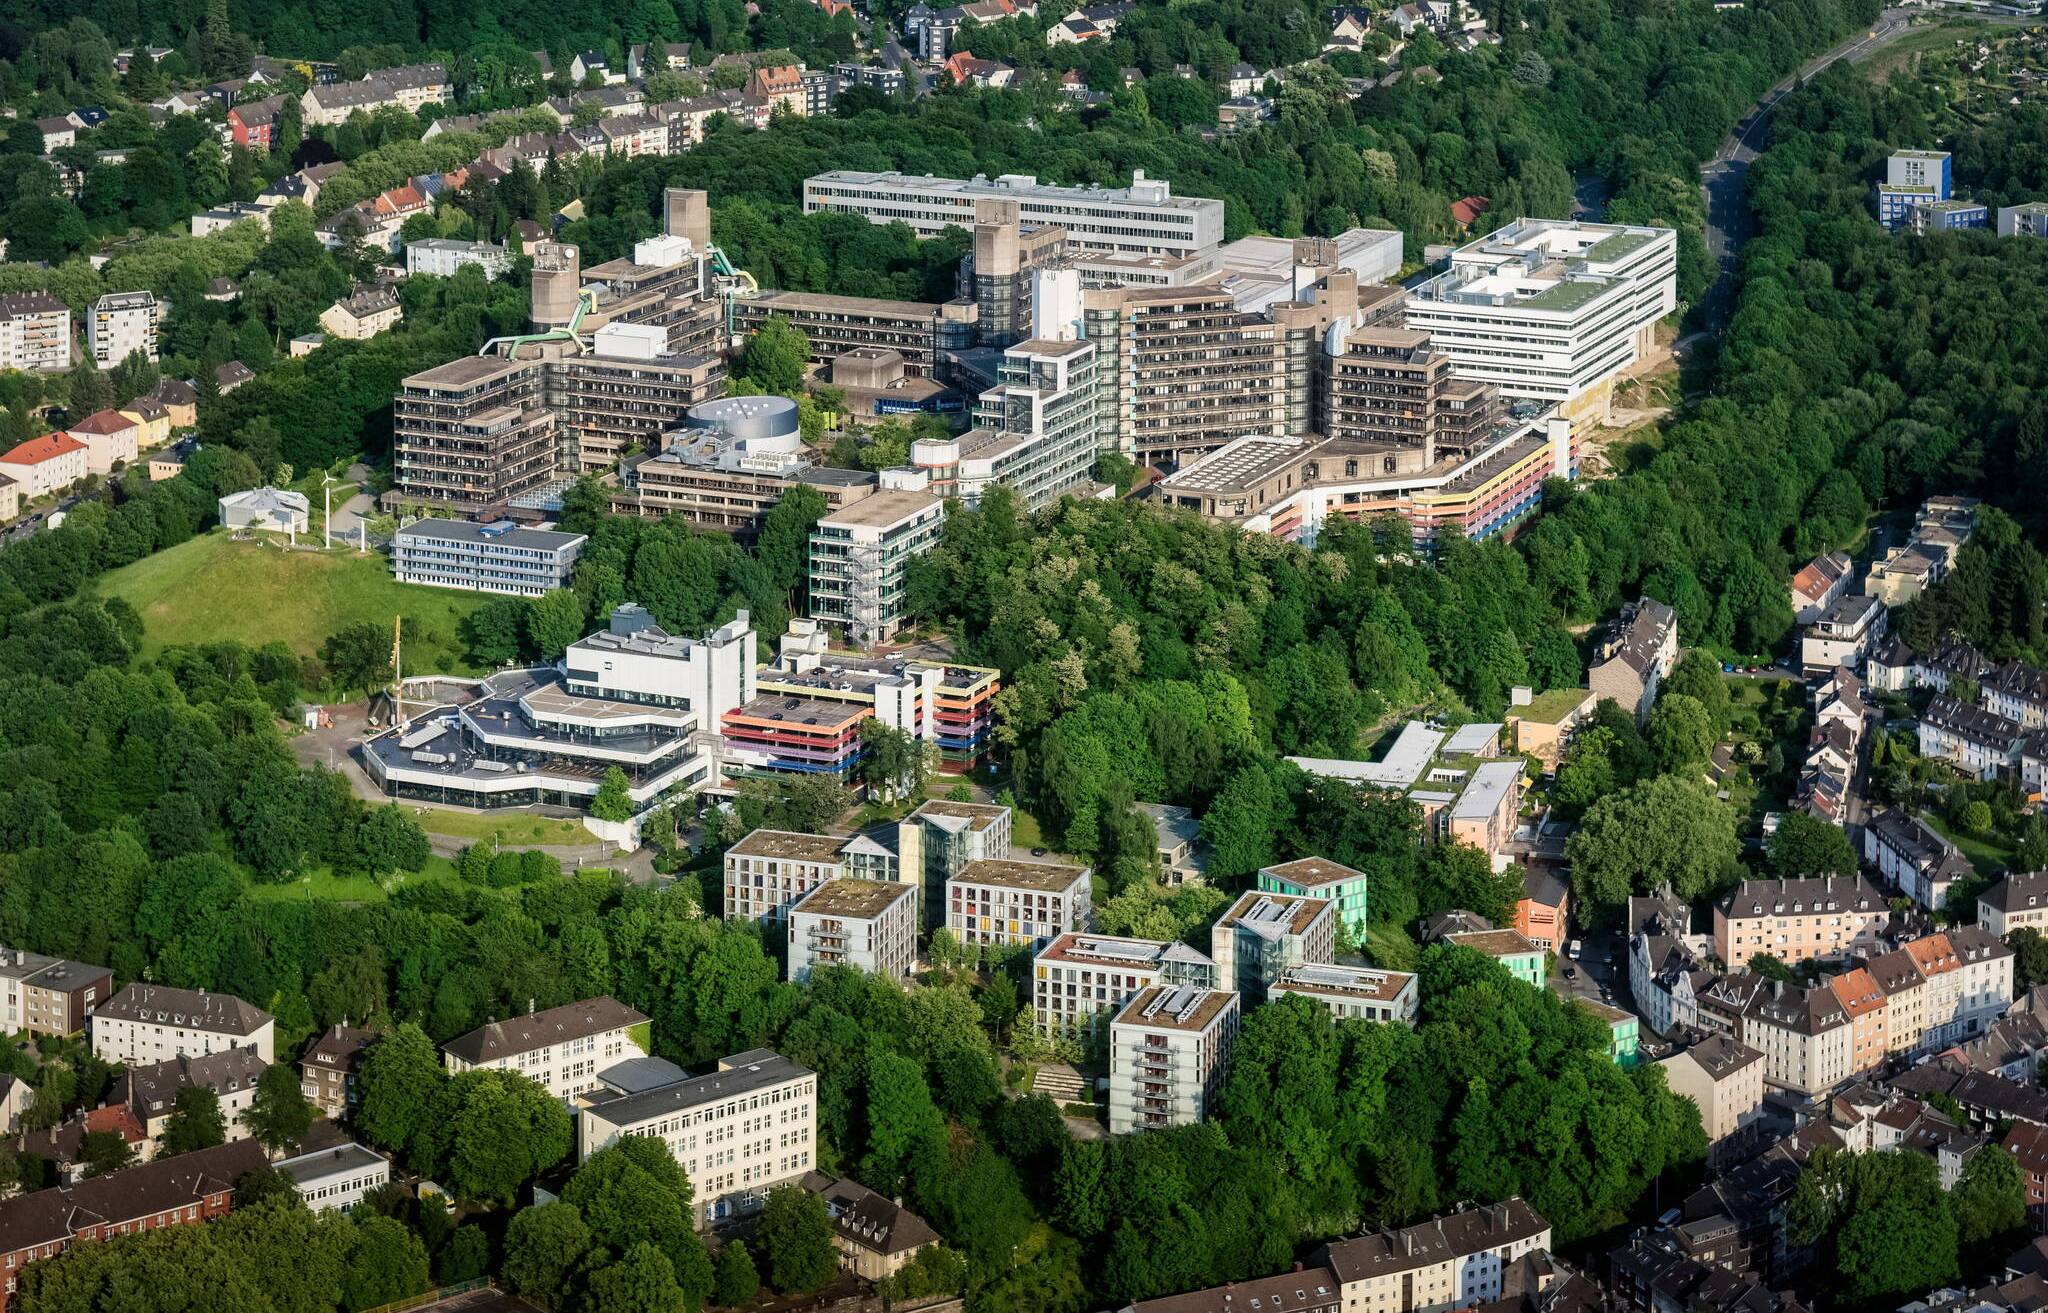  Die Uni Wuppertal aus der Luft.  